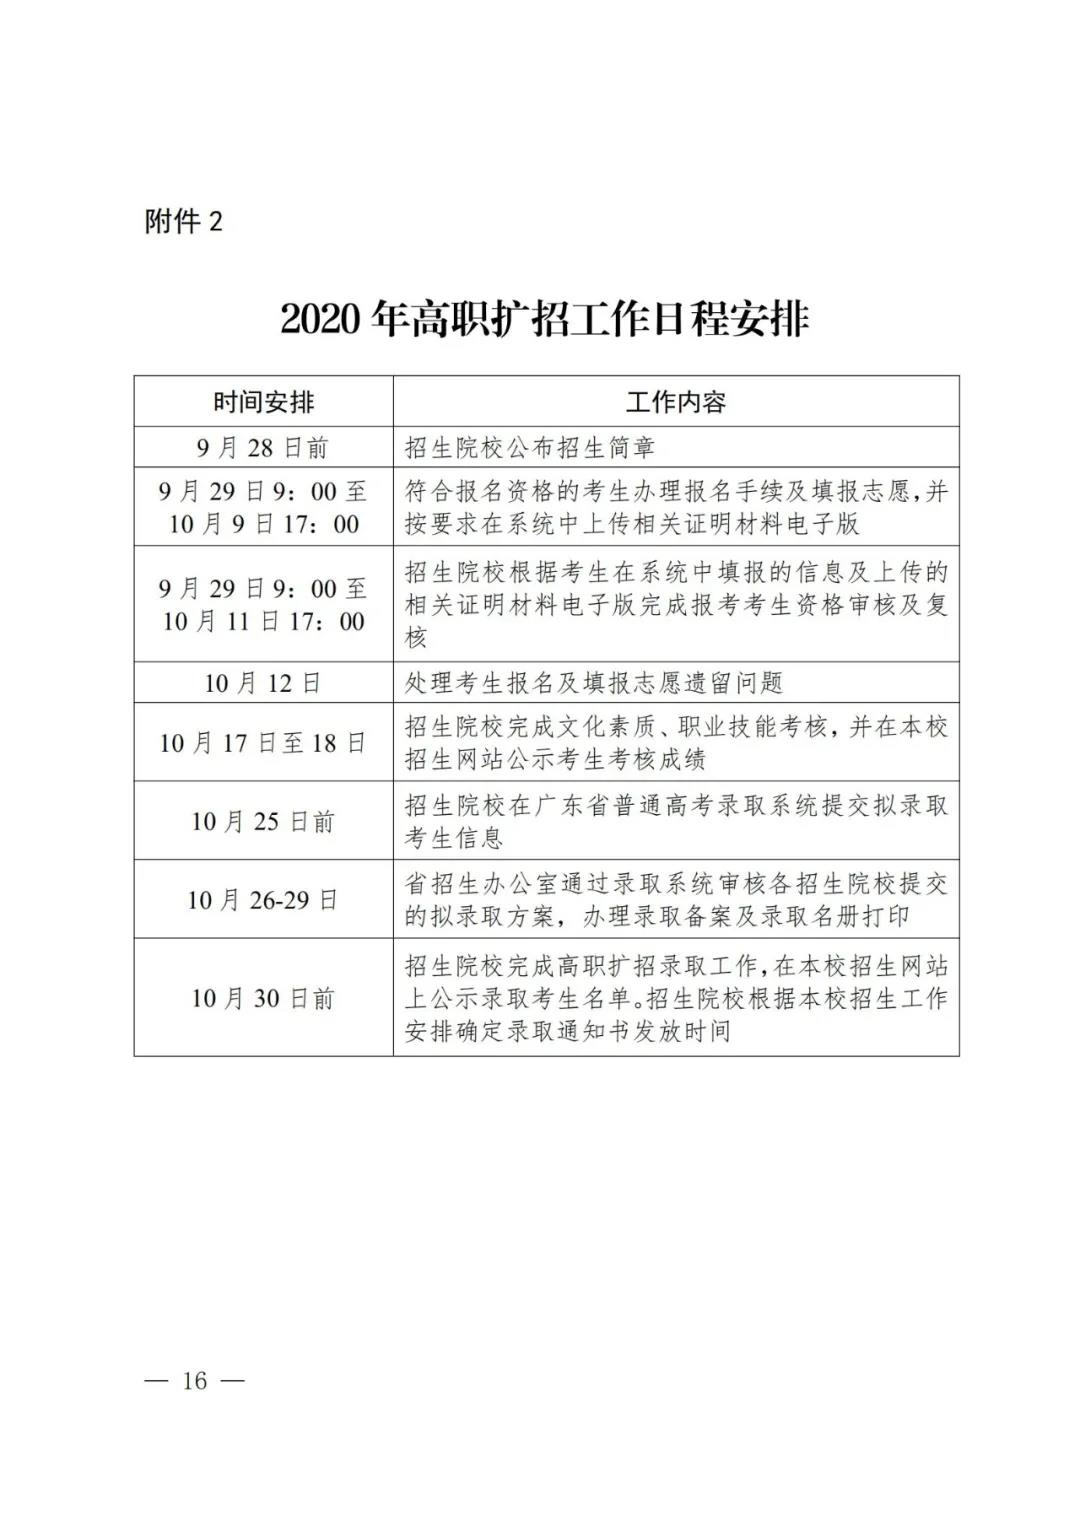 2020年广东省高职扩招工作日程安排